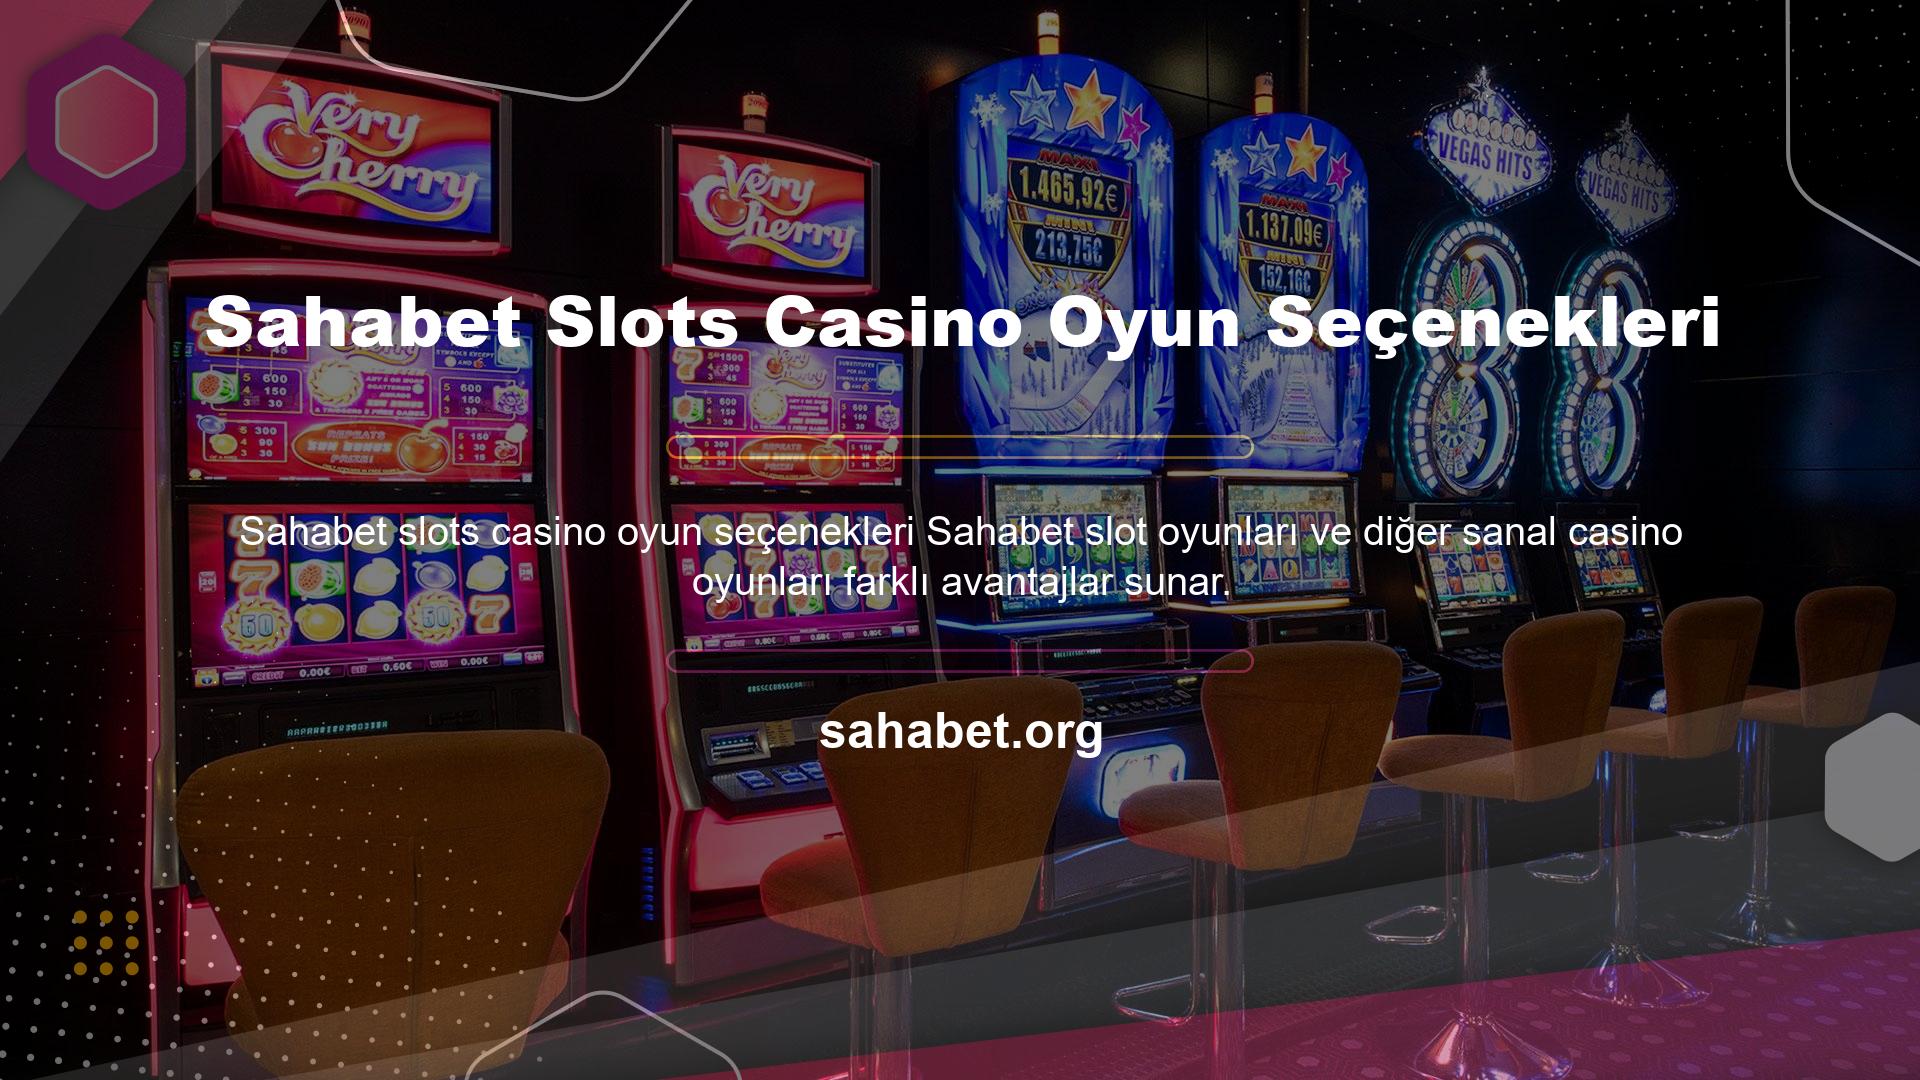 Sahabet slots casino oyun seçenekleri